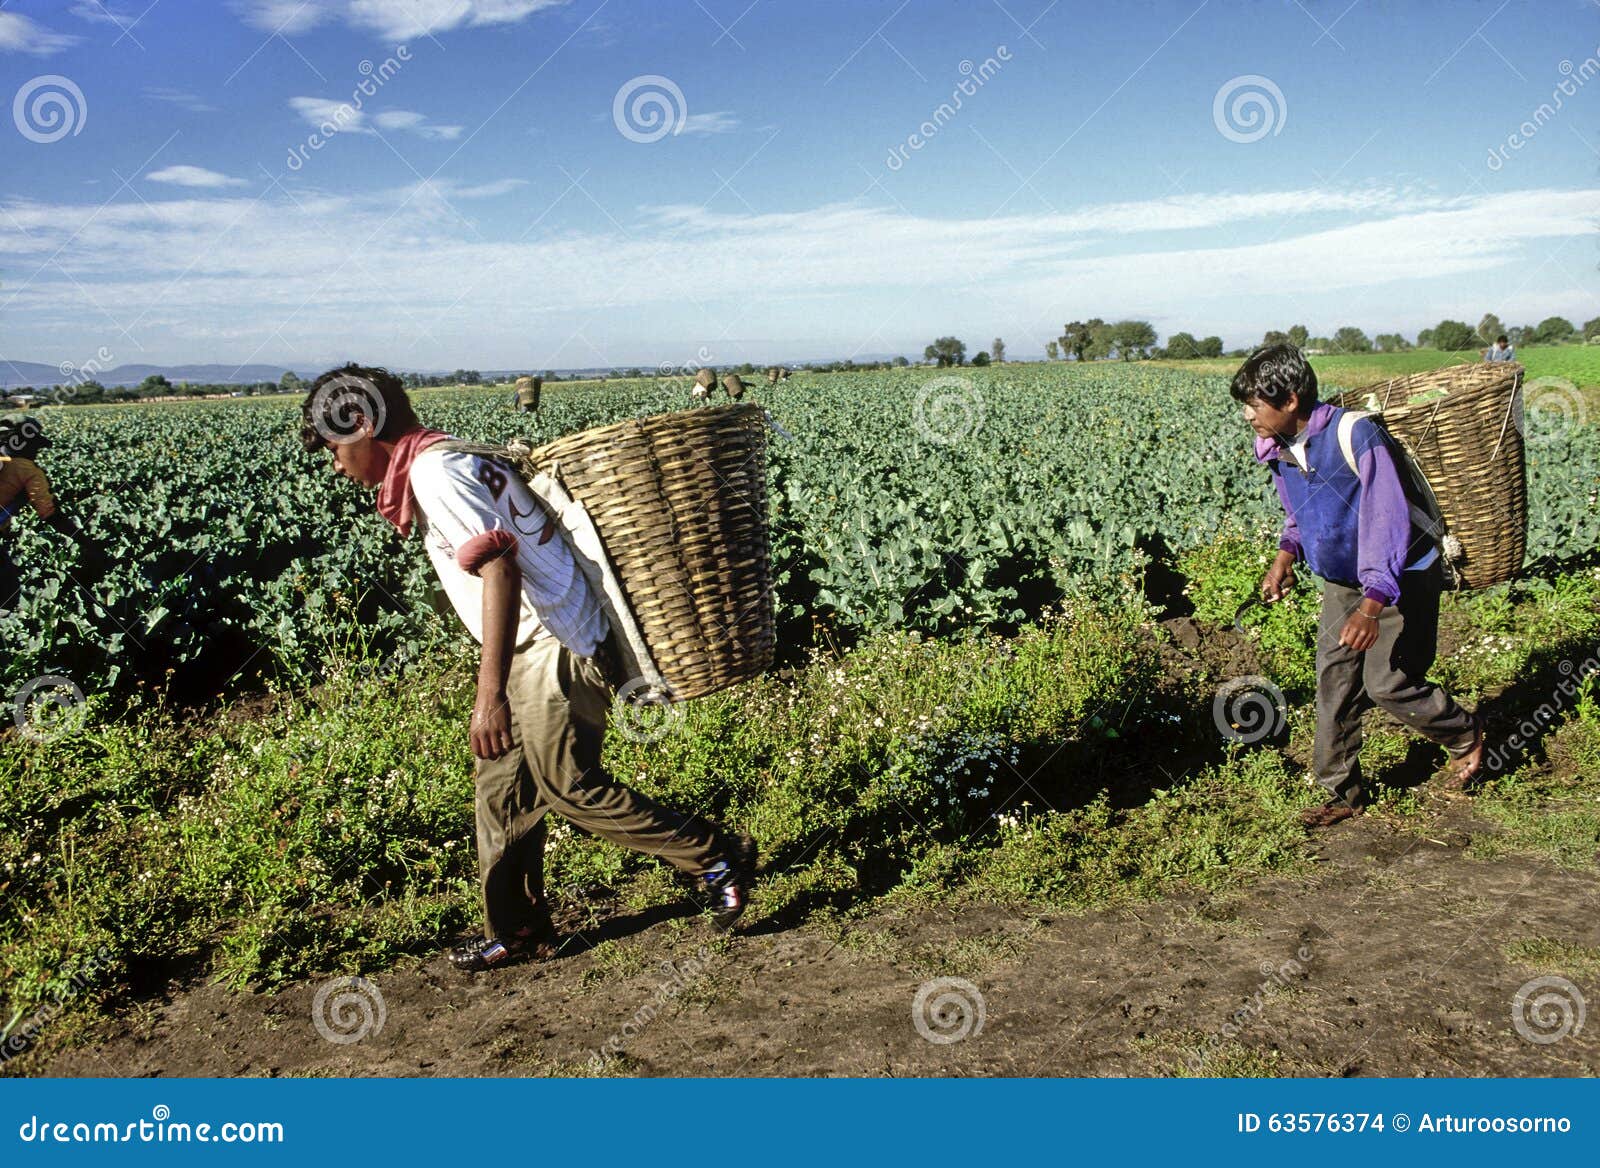 Mexicaanse landbouwers redactionele stock afbeelding. Image of boeren ...